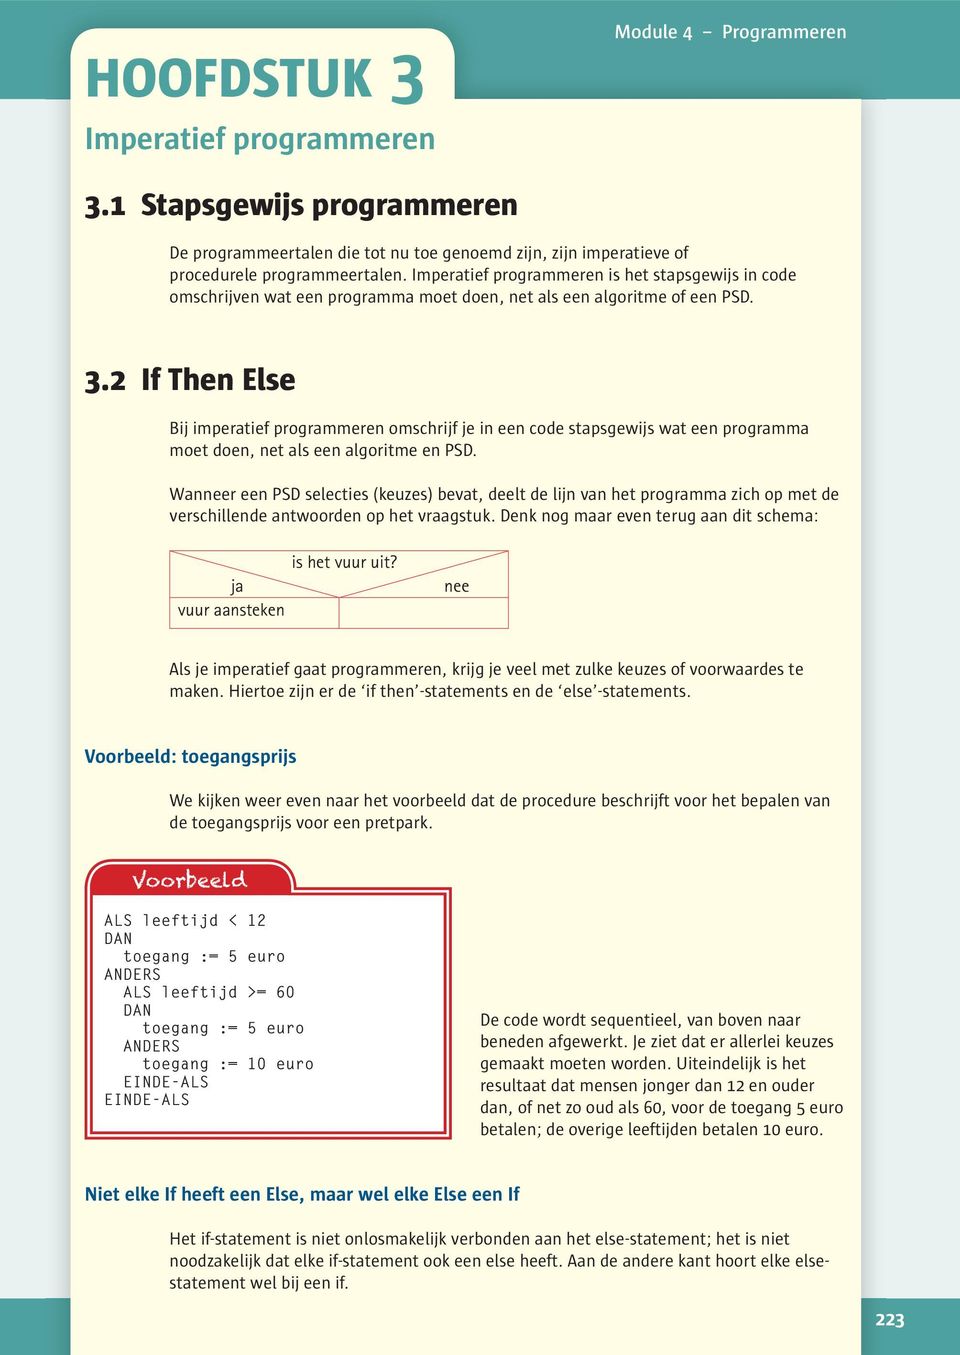 2 If Then Else Bij imperatief programmeren omschrijf je in een code stapsgewijs wat een programma moet doen, net als een algoritme en PSD.